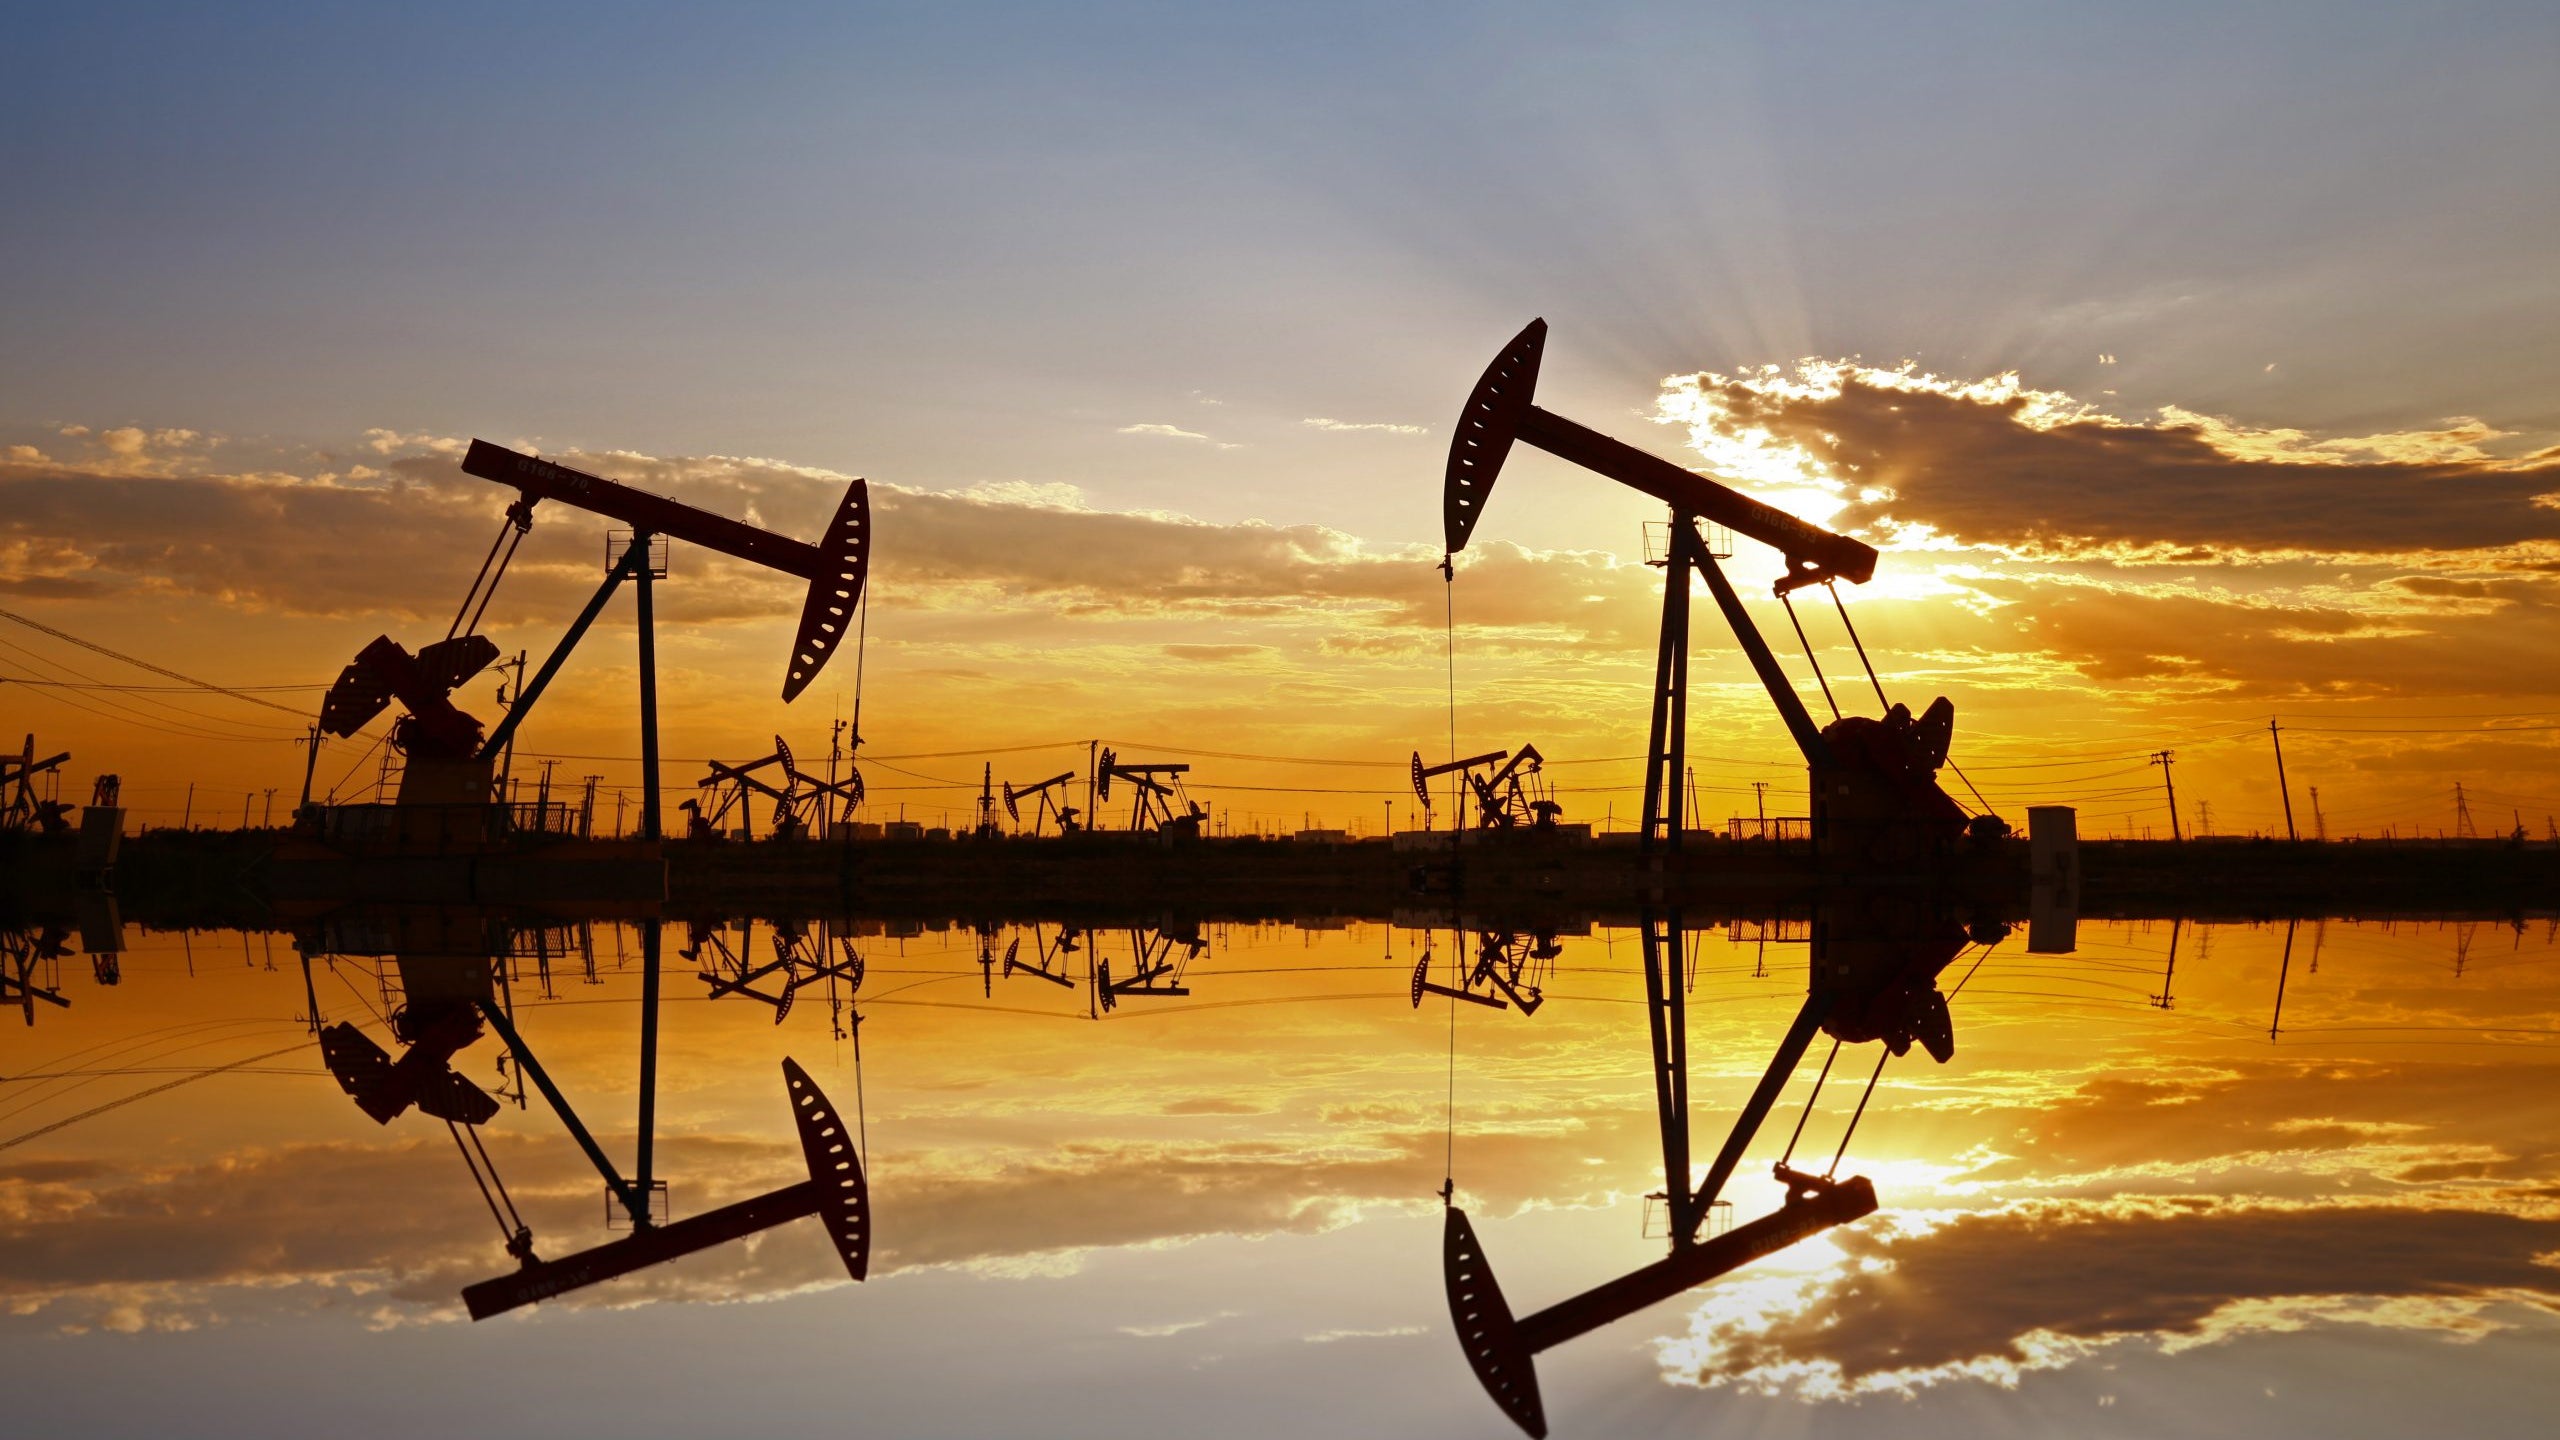 Uluslararası Enerji Ajansı küresel petrol talebi öngörüsünü aşağı yönlü revize etti